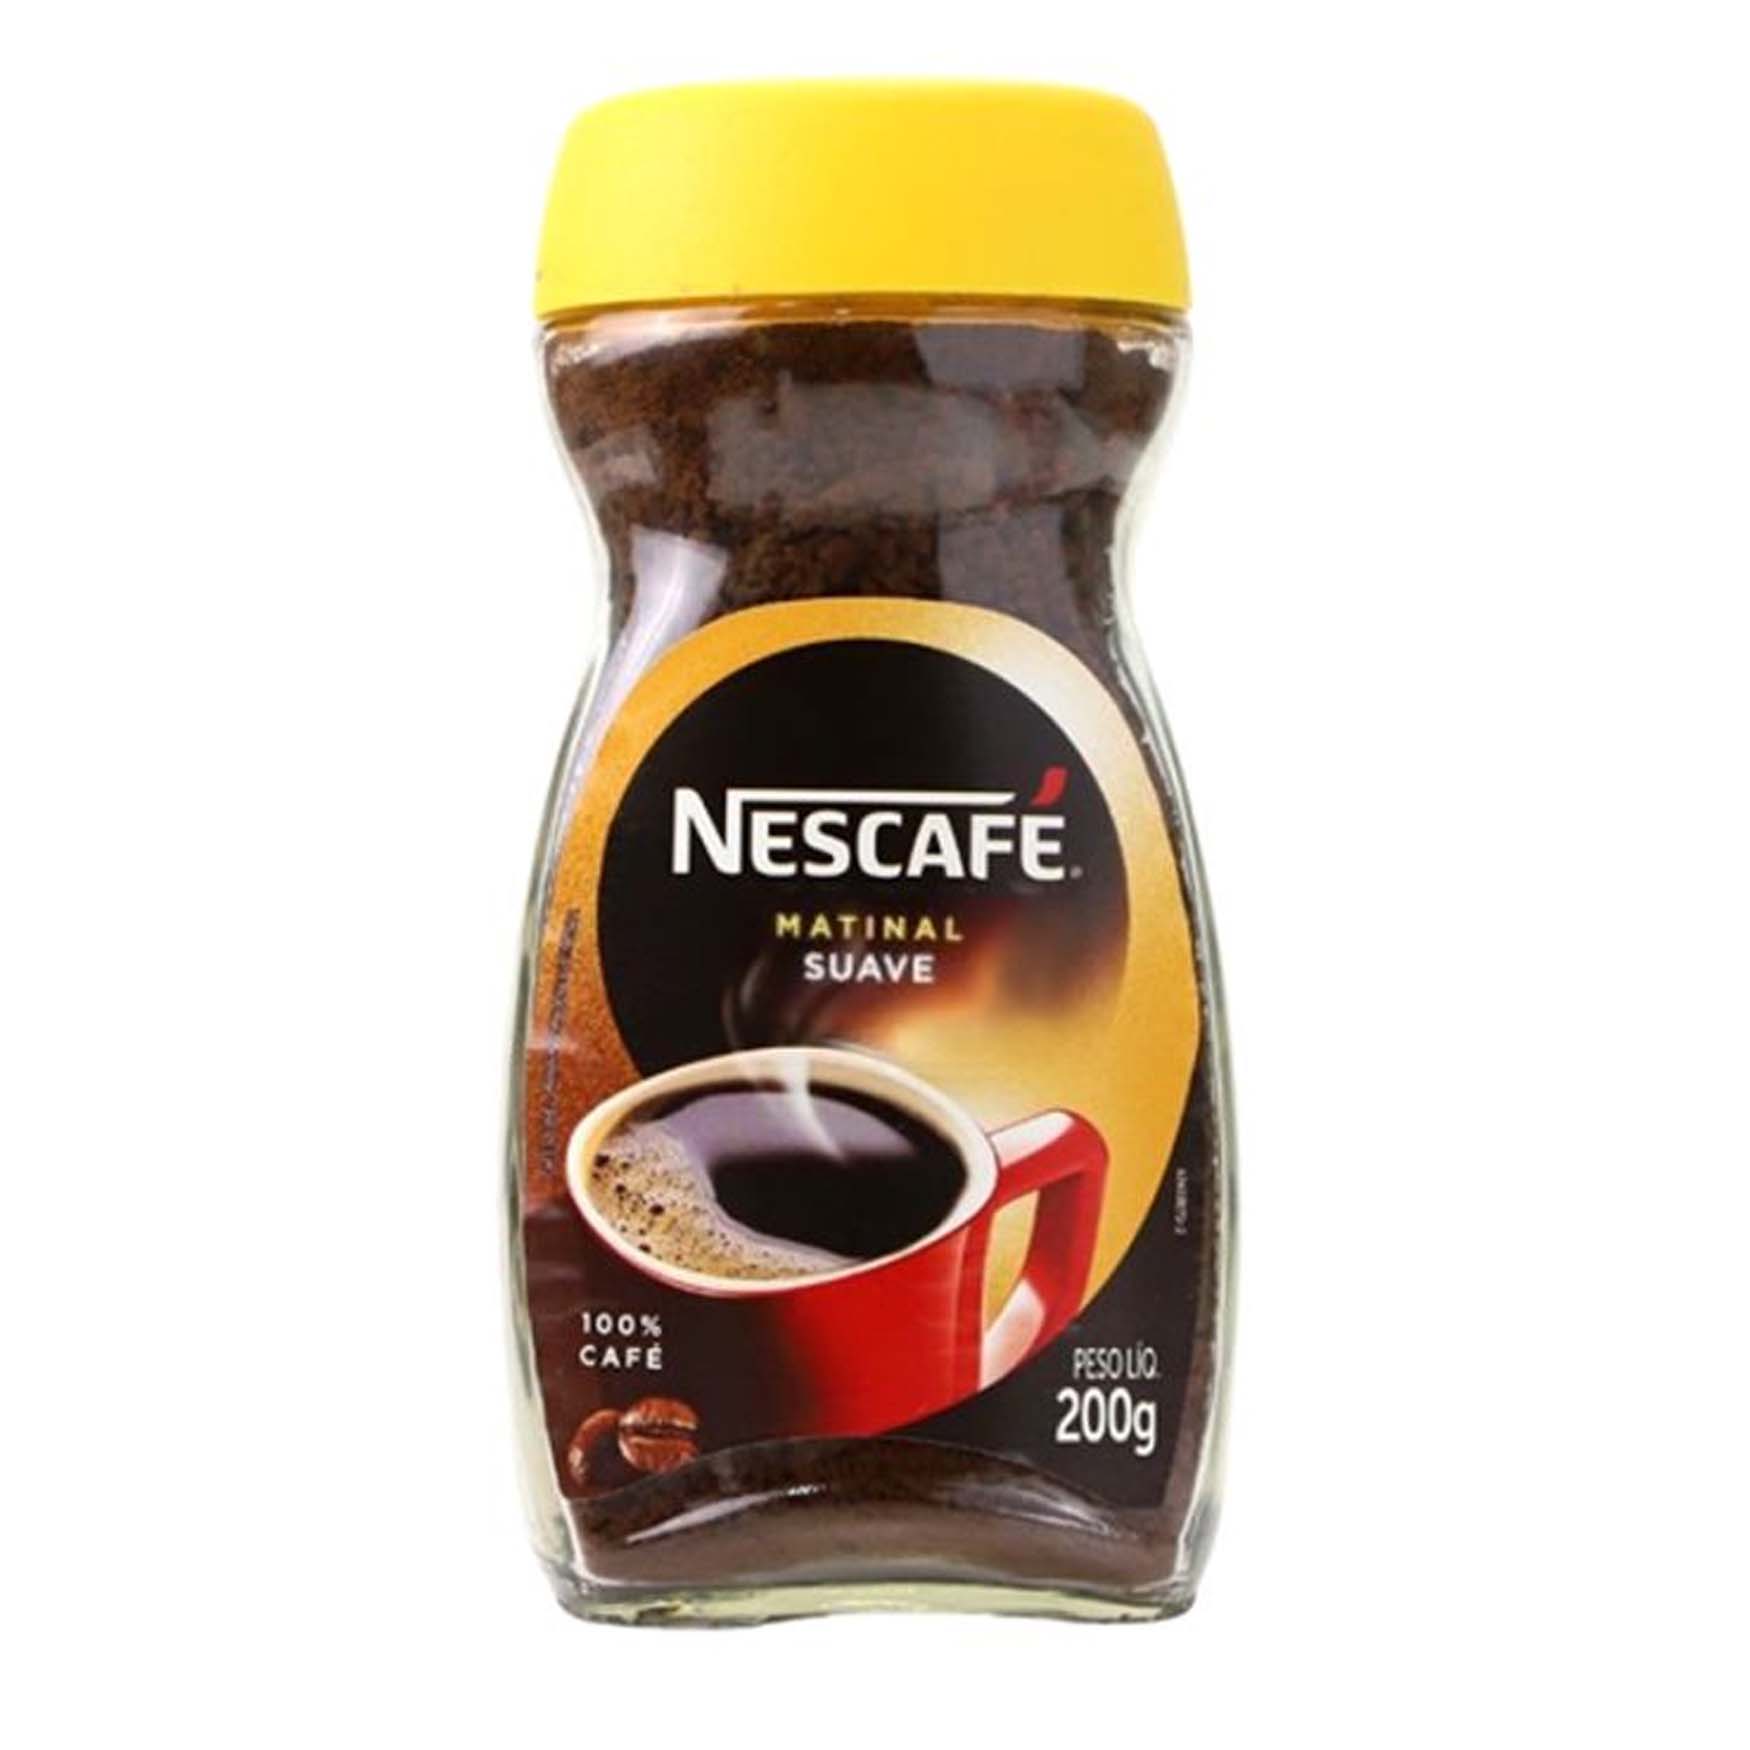 Nescafe Sauve